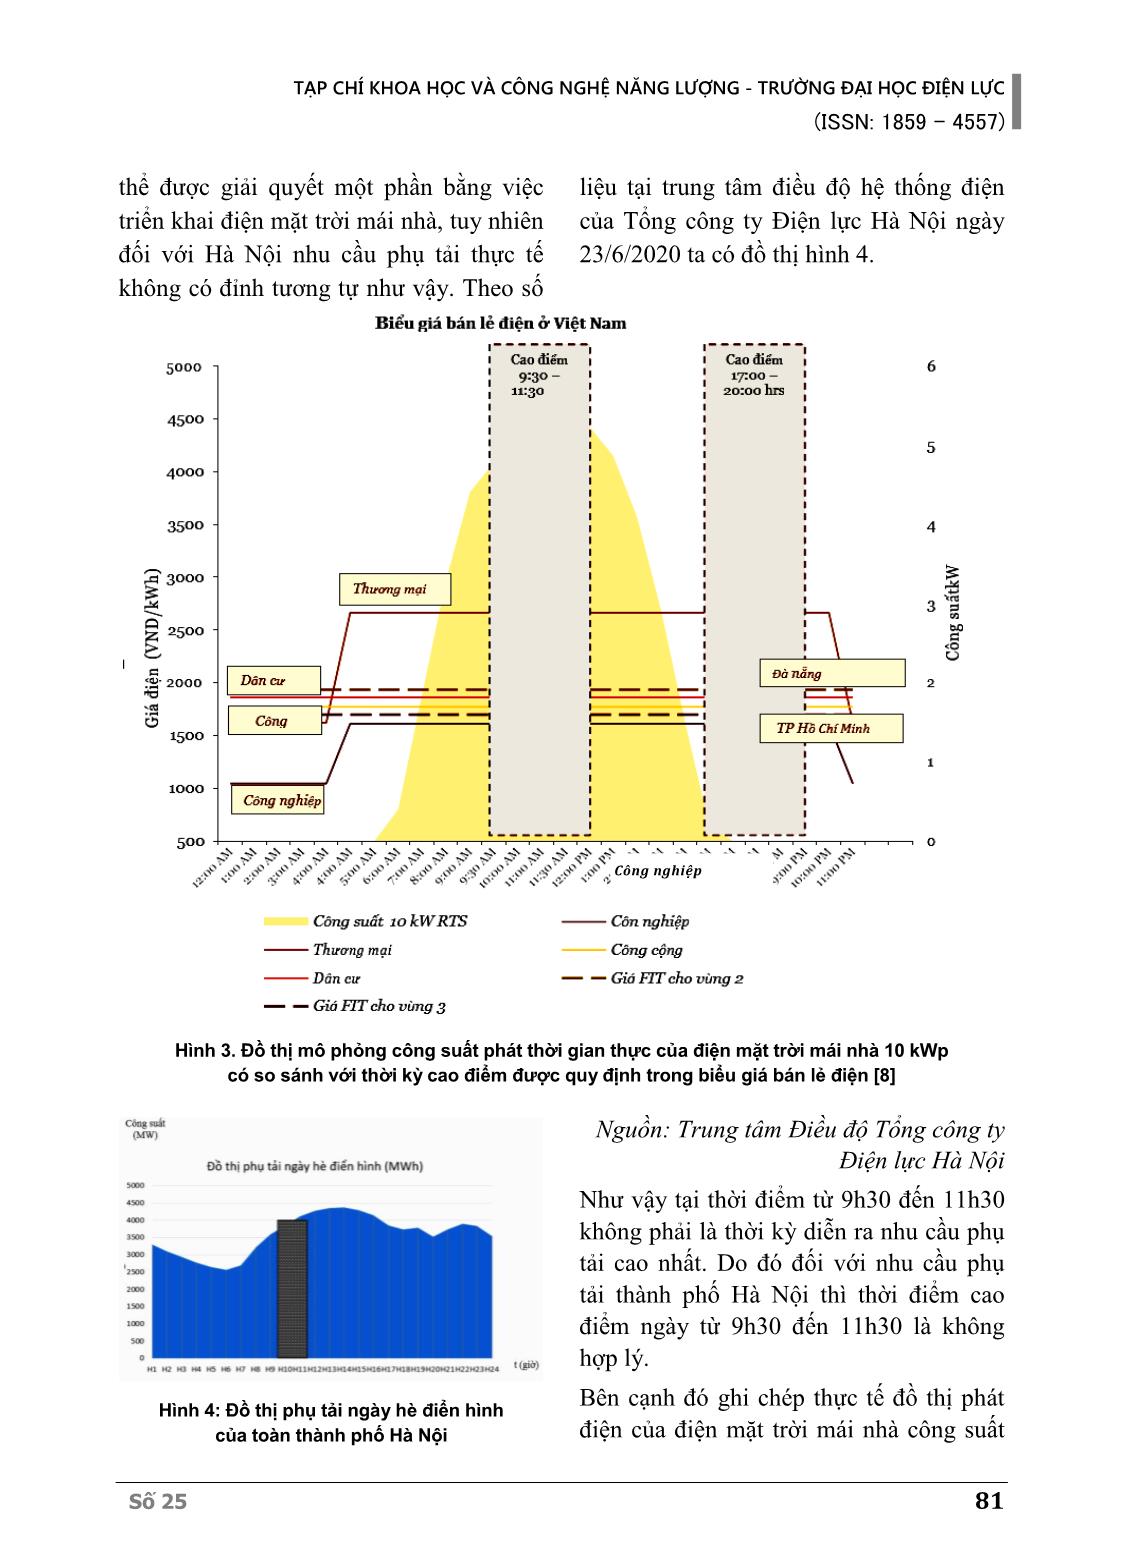 Đánh giá tác động của biểu giá bán lẻ điện tới phát triển điện mặt trời mái nhà tại Việt Nam trang 8